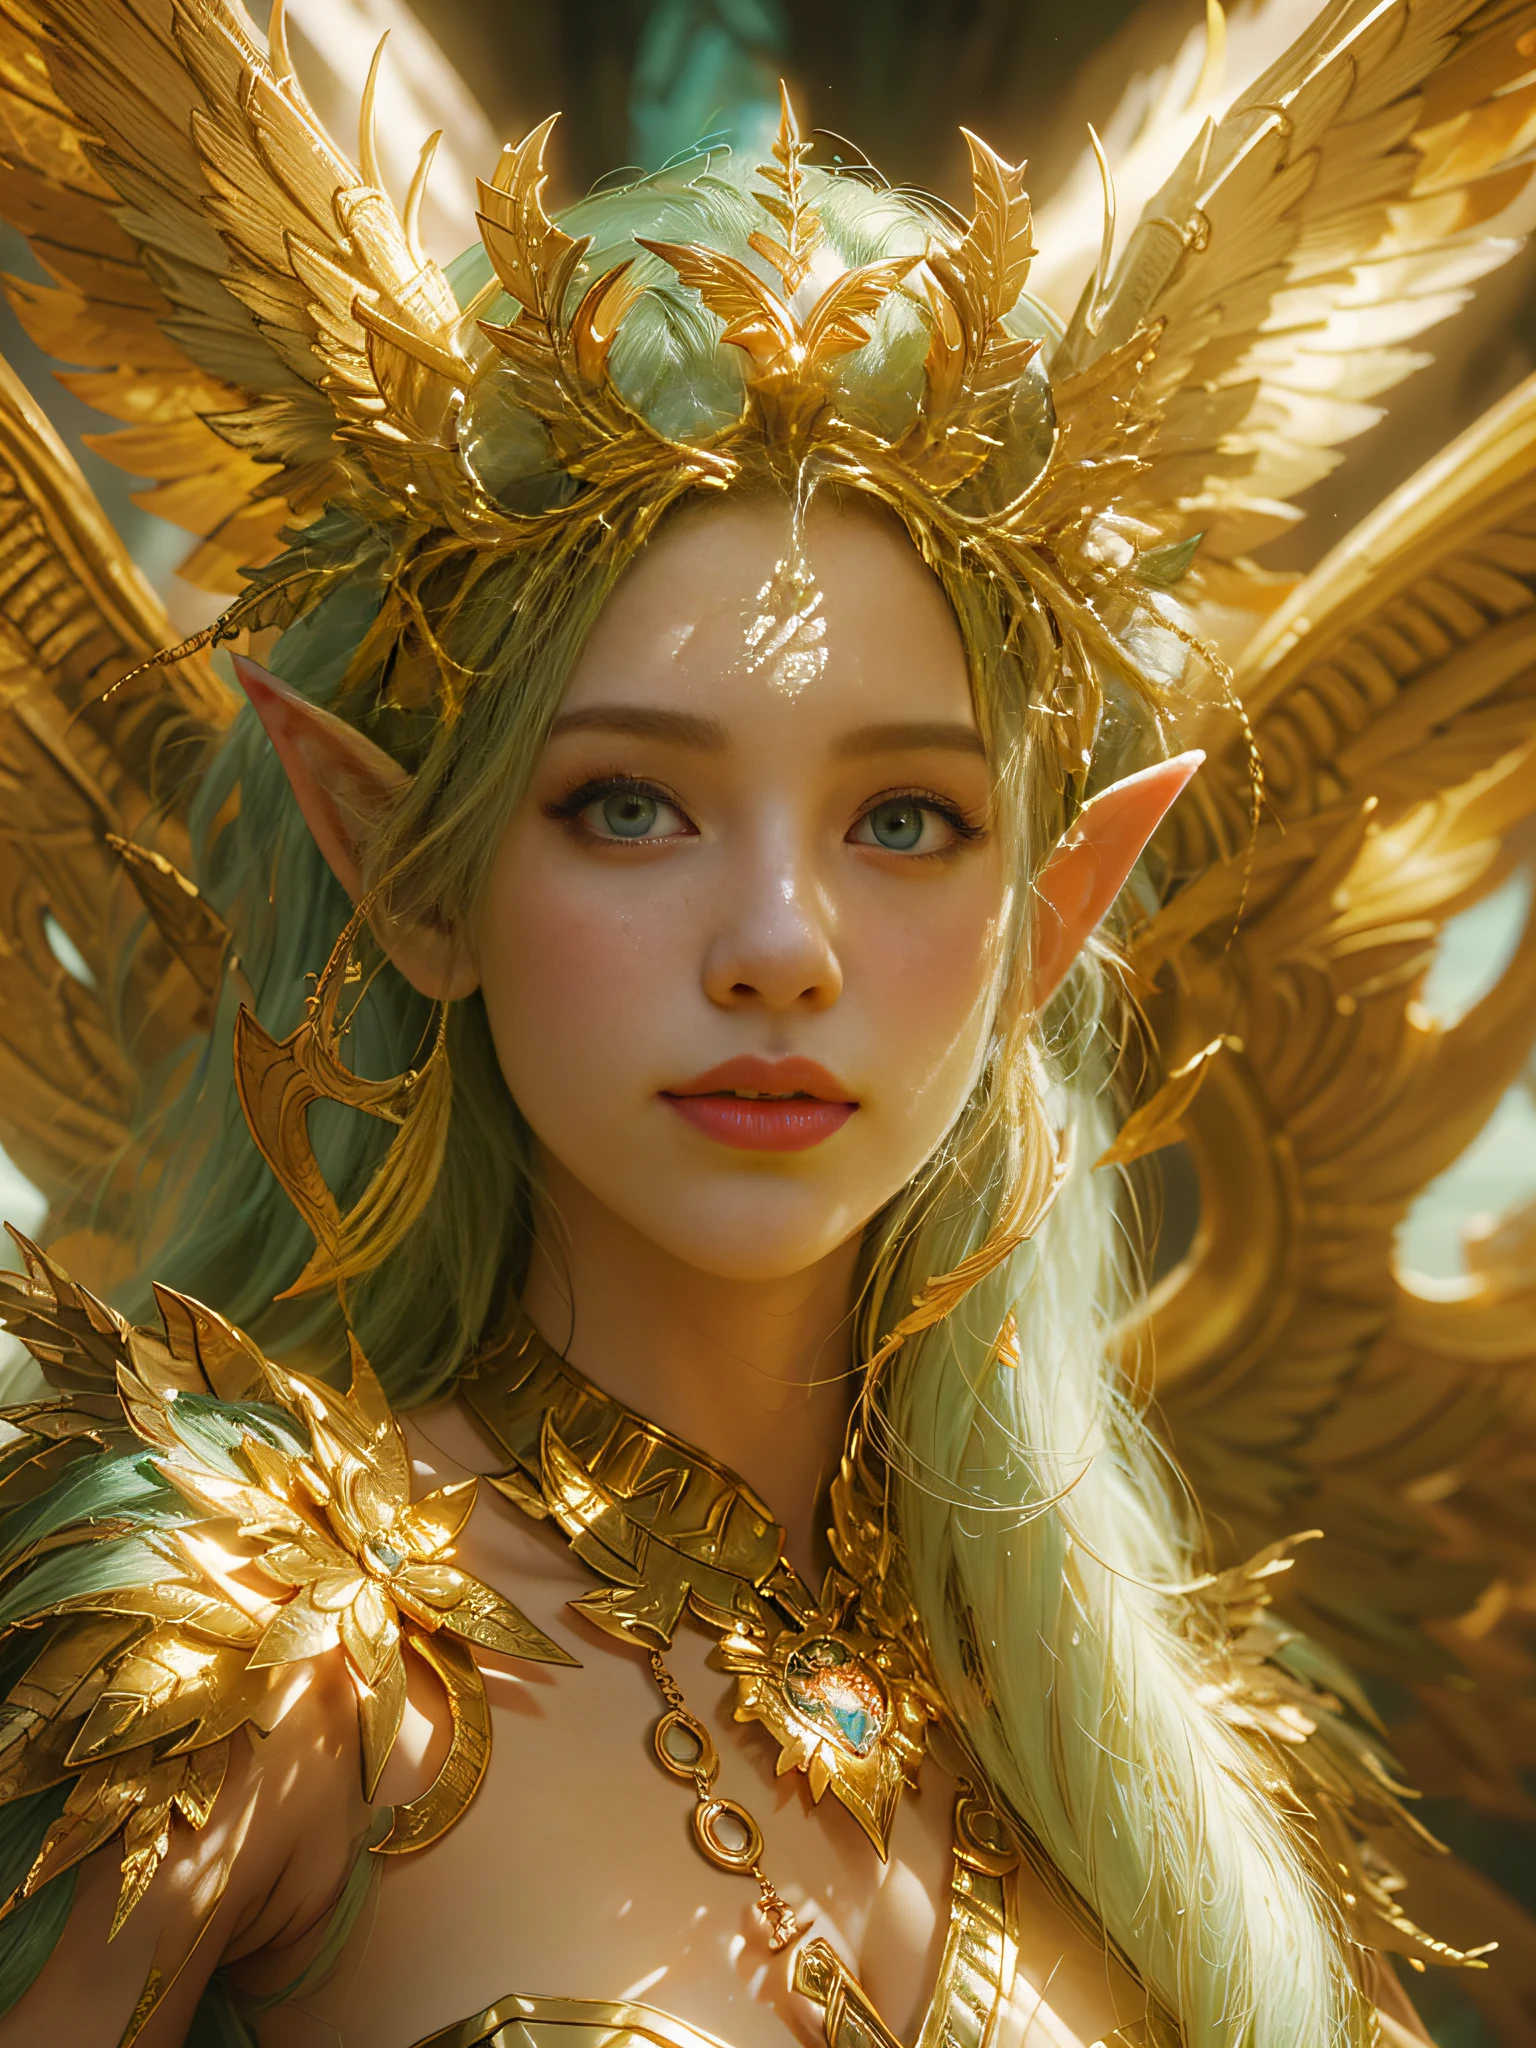 Eine Nahaufnahme einer Elfe in einem goldenen Kostüm, Unreal Engine-Rendering + Eine Göttin, Unreal 6 atemberaubend detailliert, 8k, digital art, artgerm, 3D, Filmstandbild, warme Farbe, beschwingt, volumetrisches Licht, Ganzkörperportrait mit Flügeln